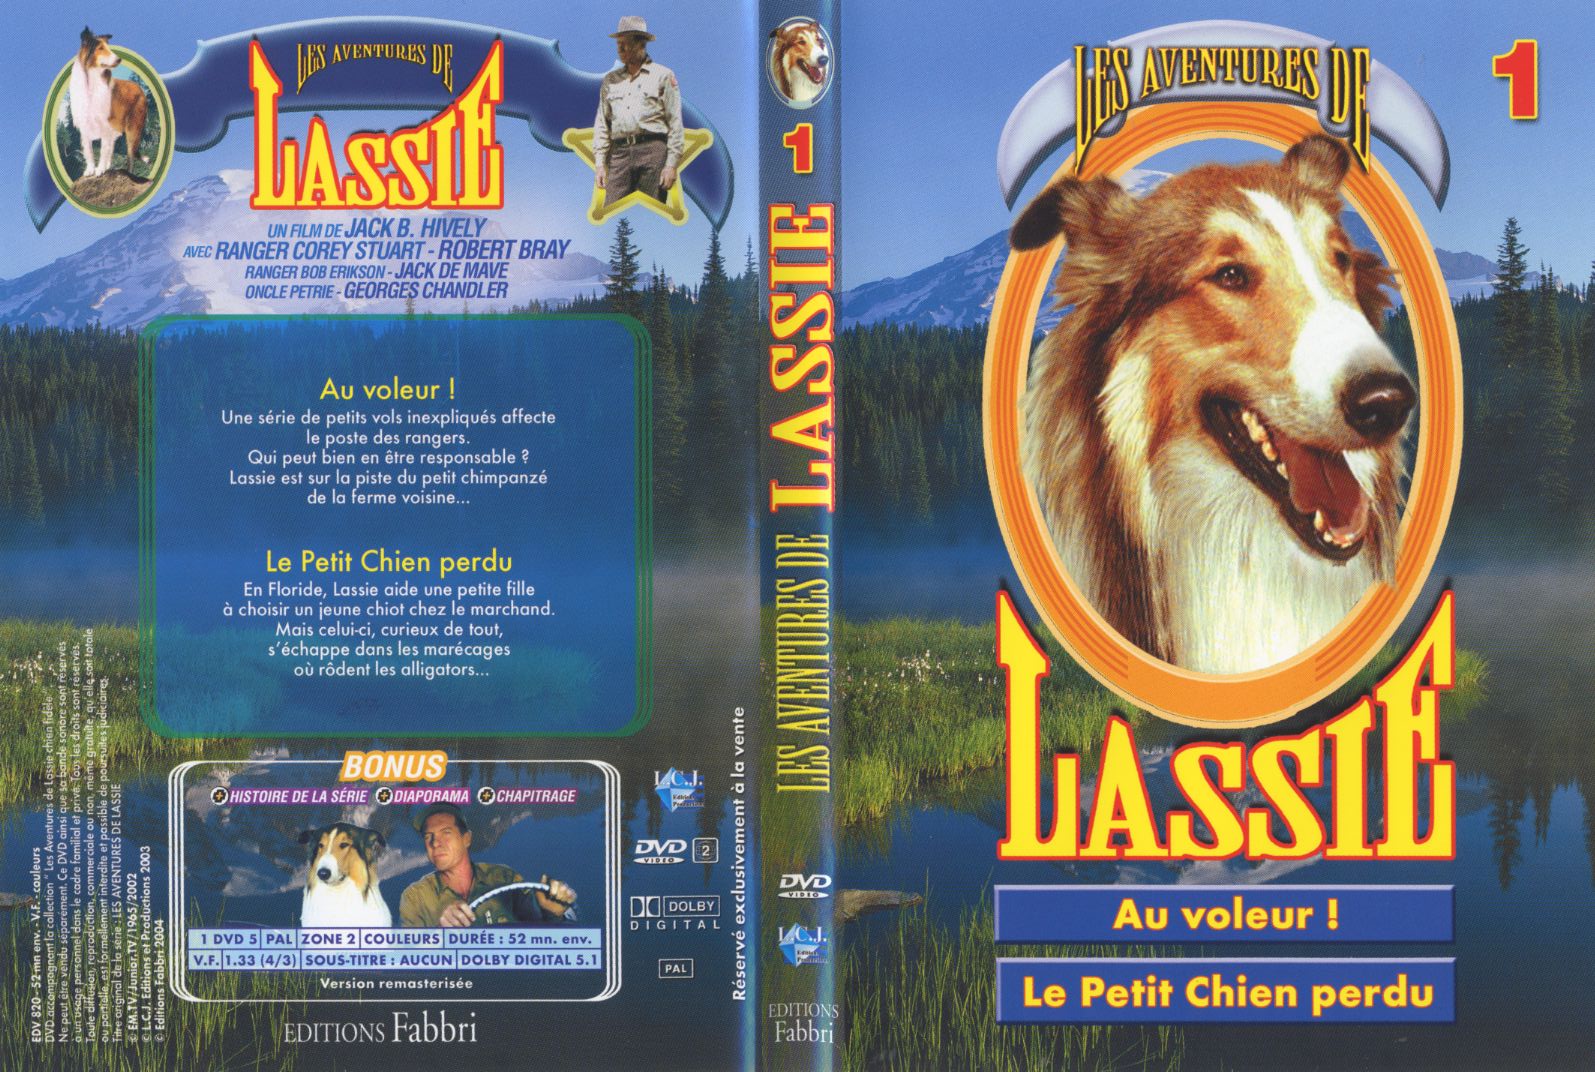 Jaquette DVD Lassie vol 1